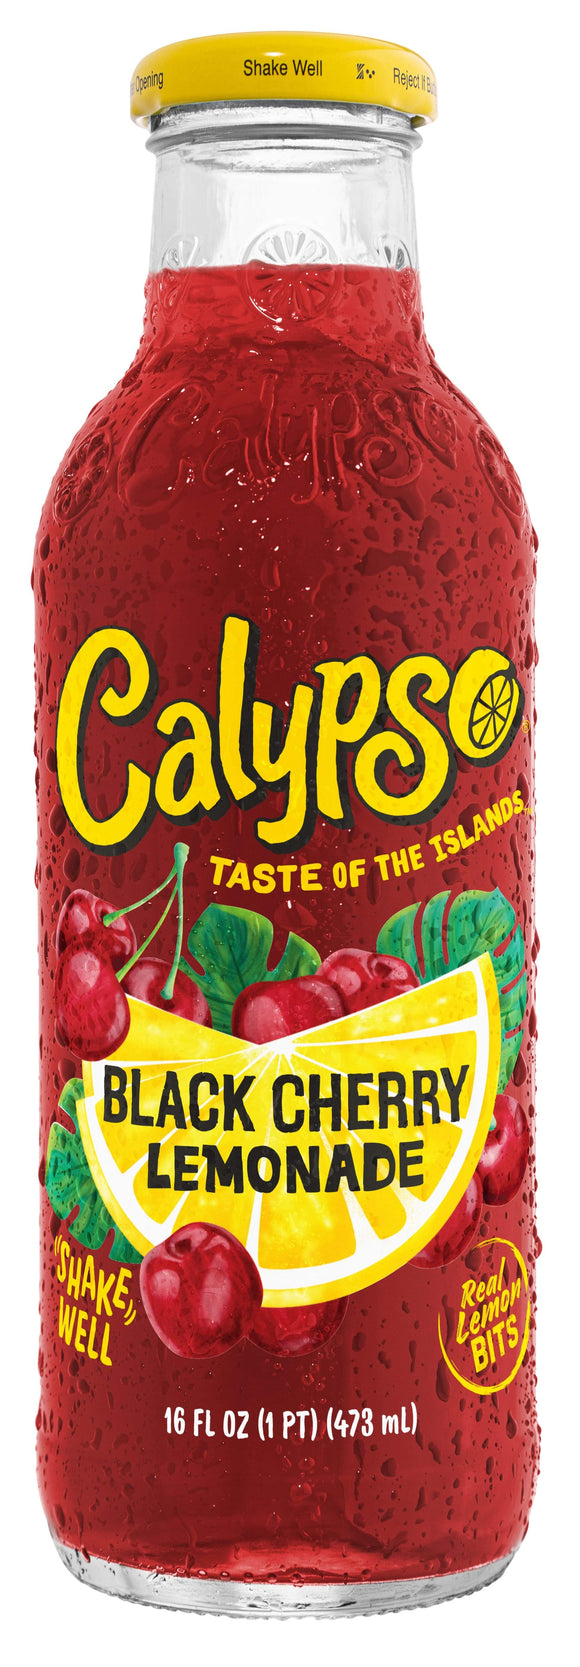 Calypso Black Cherry Lemonade 473ml glass bottle